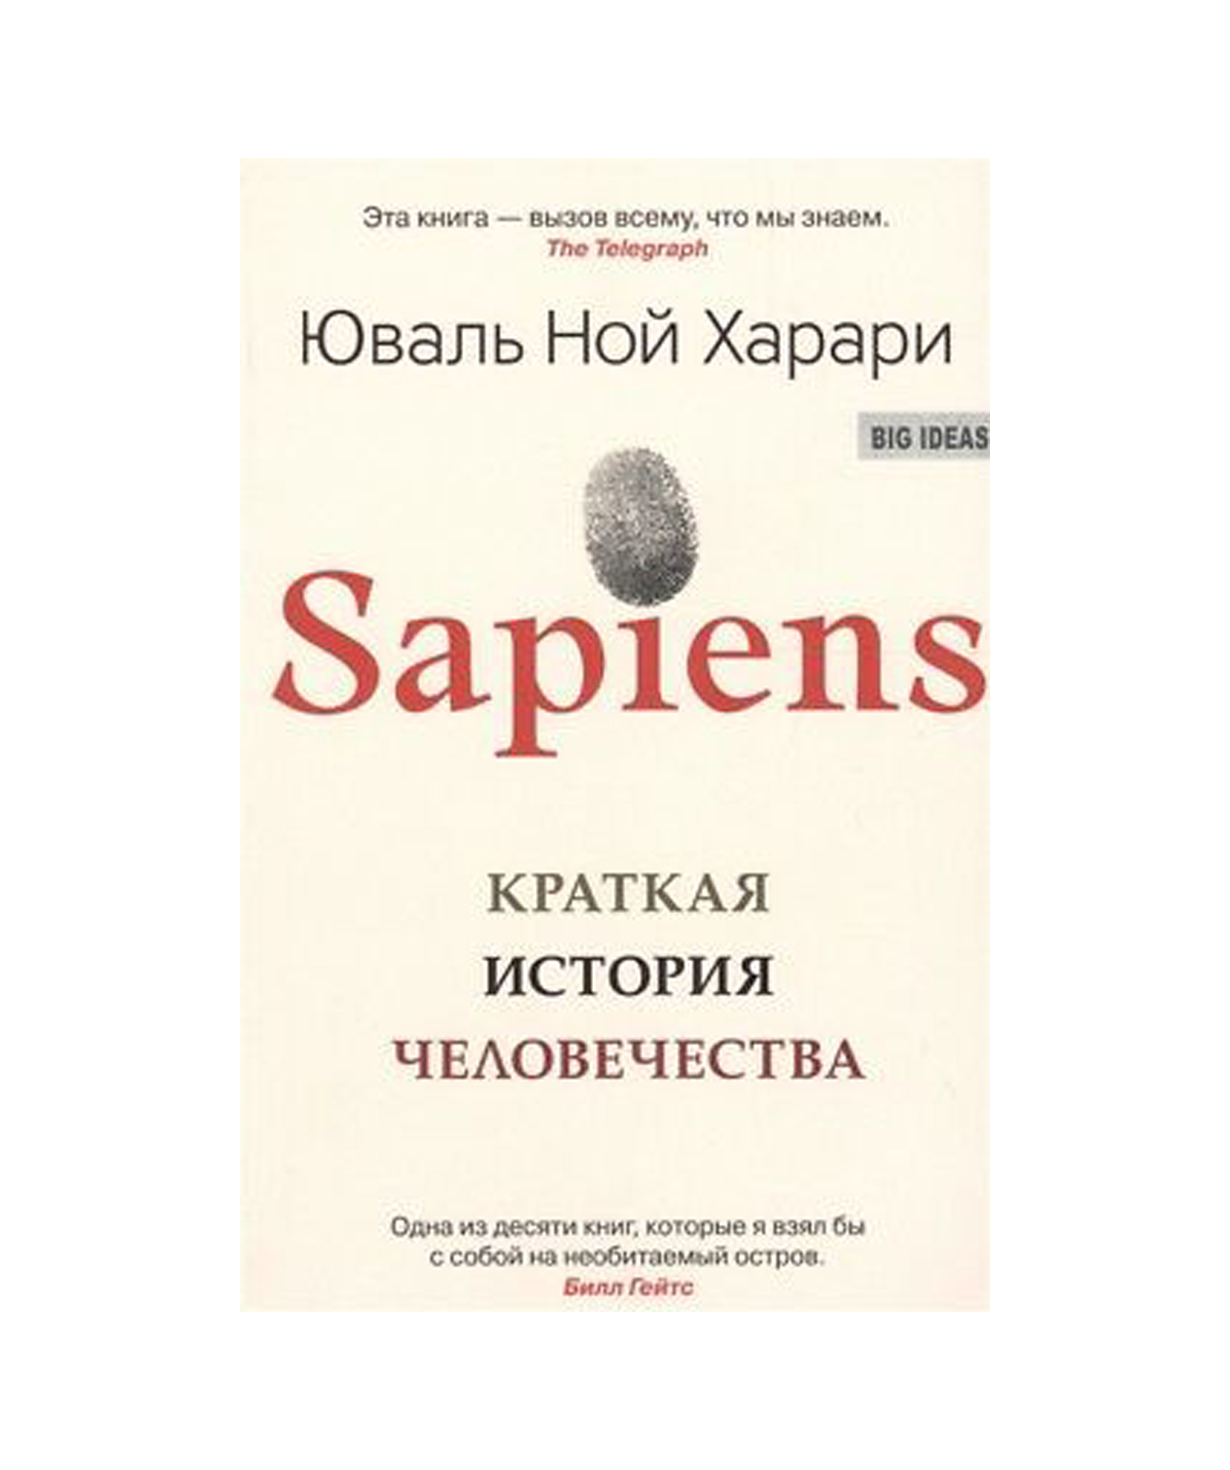 Գիրք «Sapiens: Մարդկության համառոտ պատմություն» Յուվալ Նոյ Հարարի / ռուսերեն